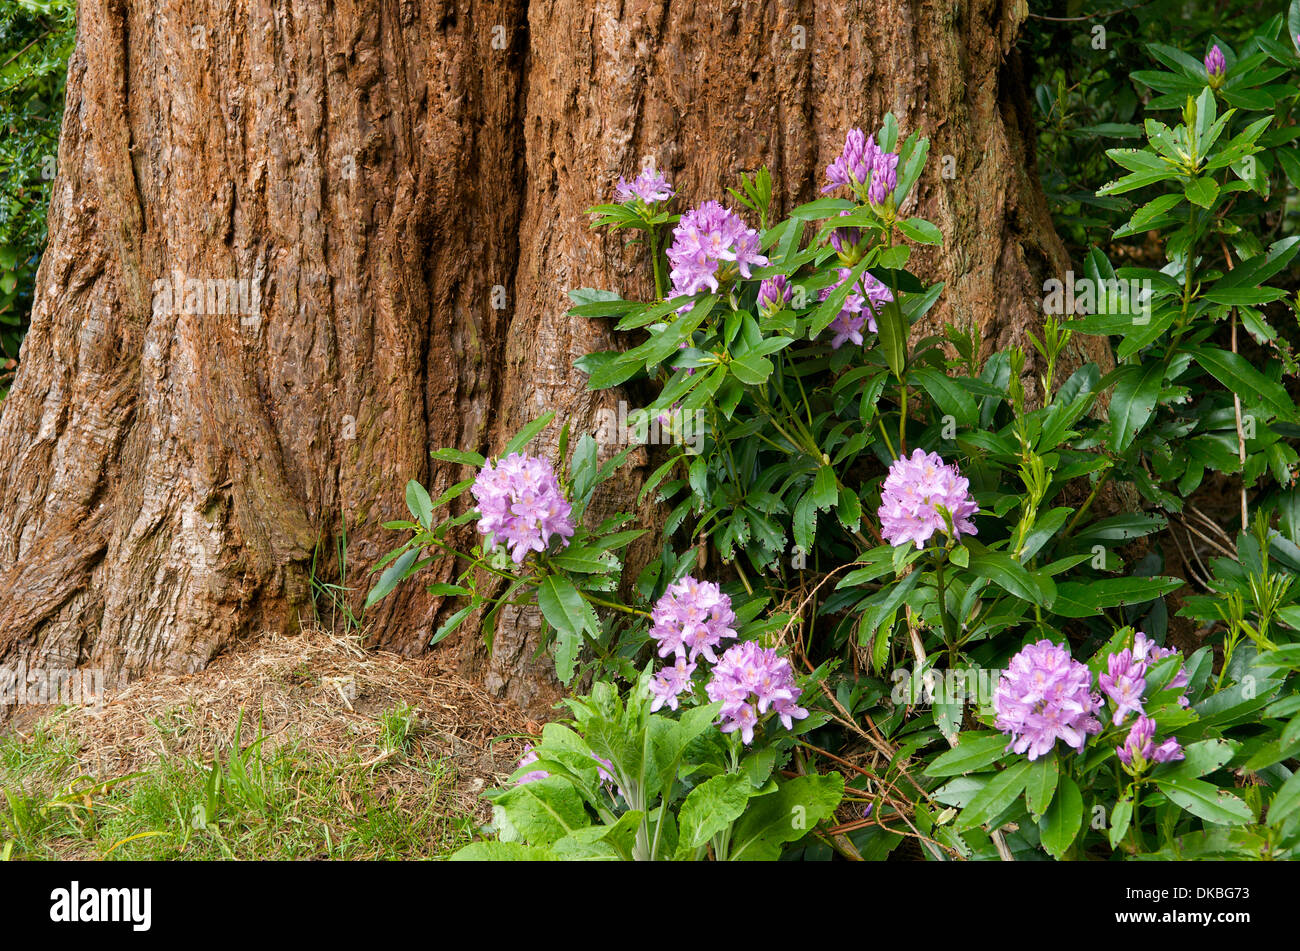 Rhododendron crescente mediante una struttura ad albero in un giardino, Wales, Regno Unito Foto Stock